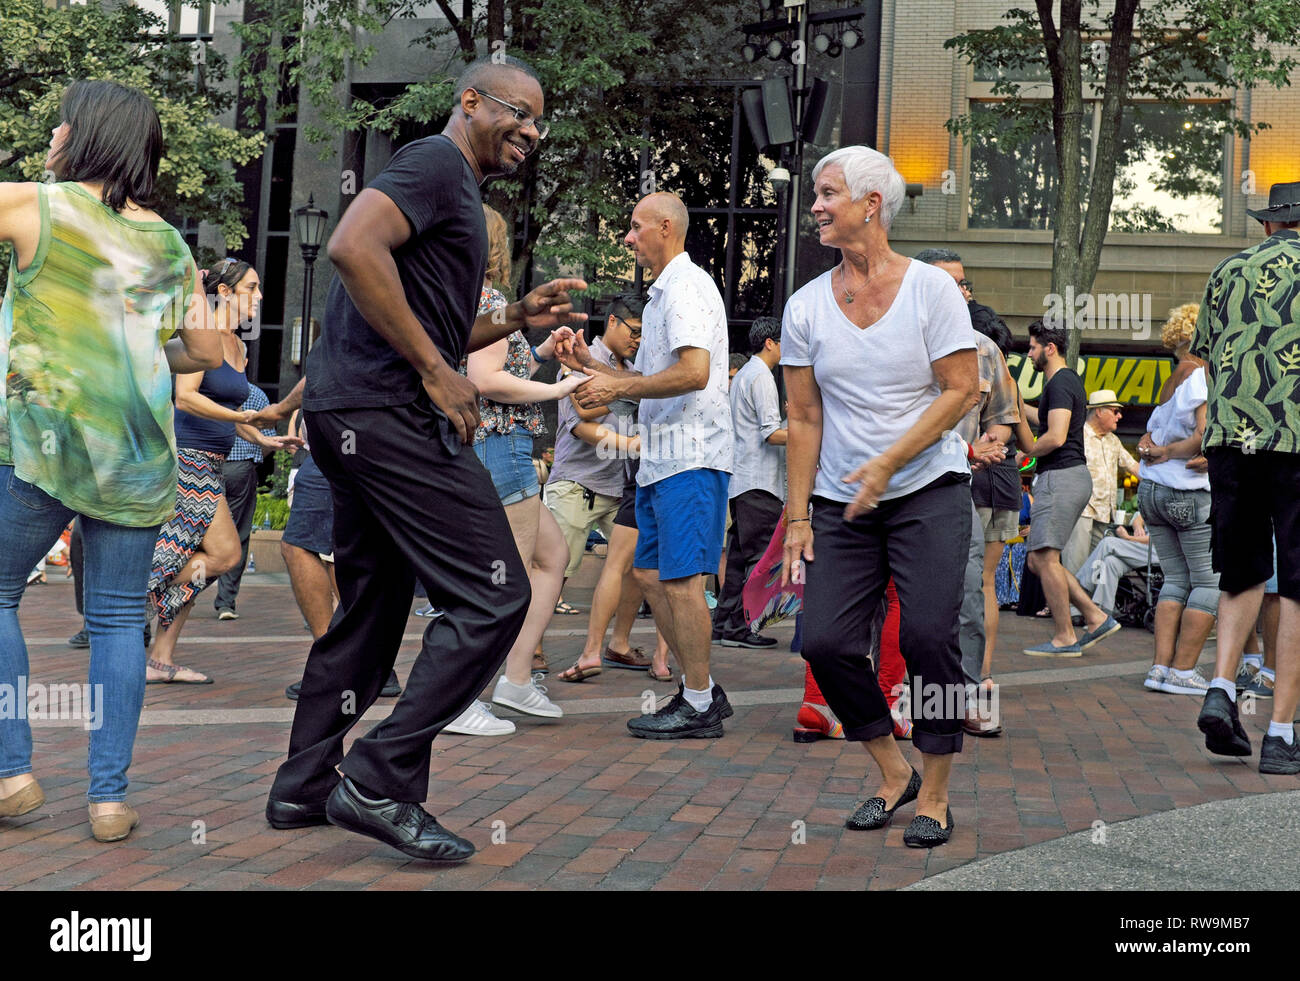 Dancing in the US Bank Plaza nel centro di Cleveland, Ohio, Stati Uniti d'America è il settimanale estate caso attirare una sezione di Clevelanders e visitatori. Foto Stock